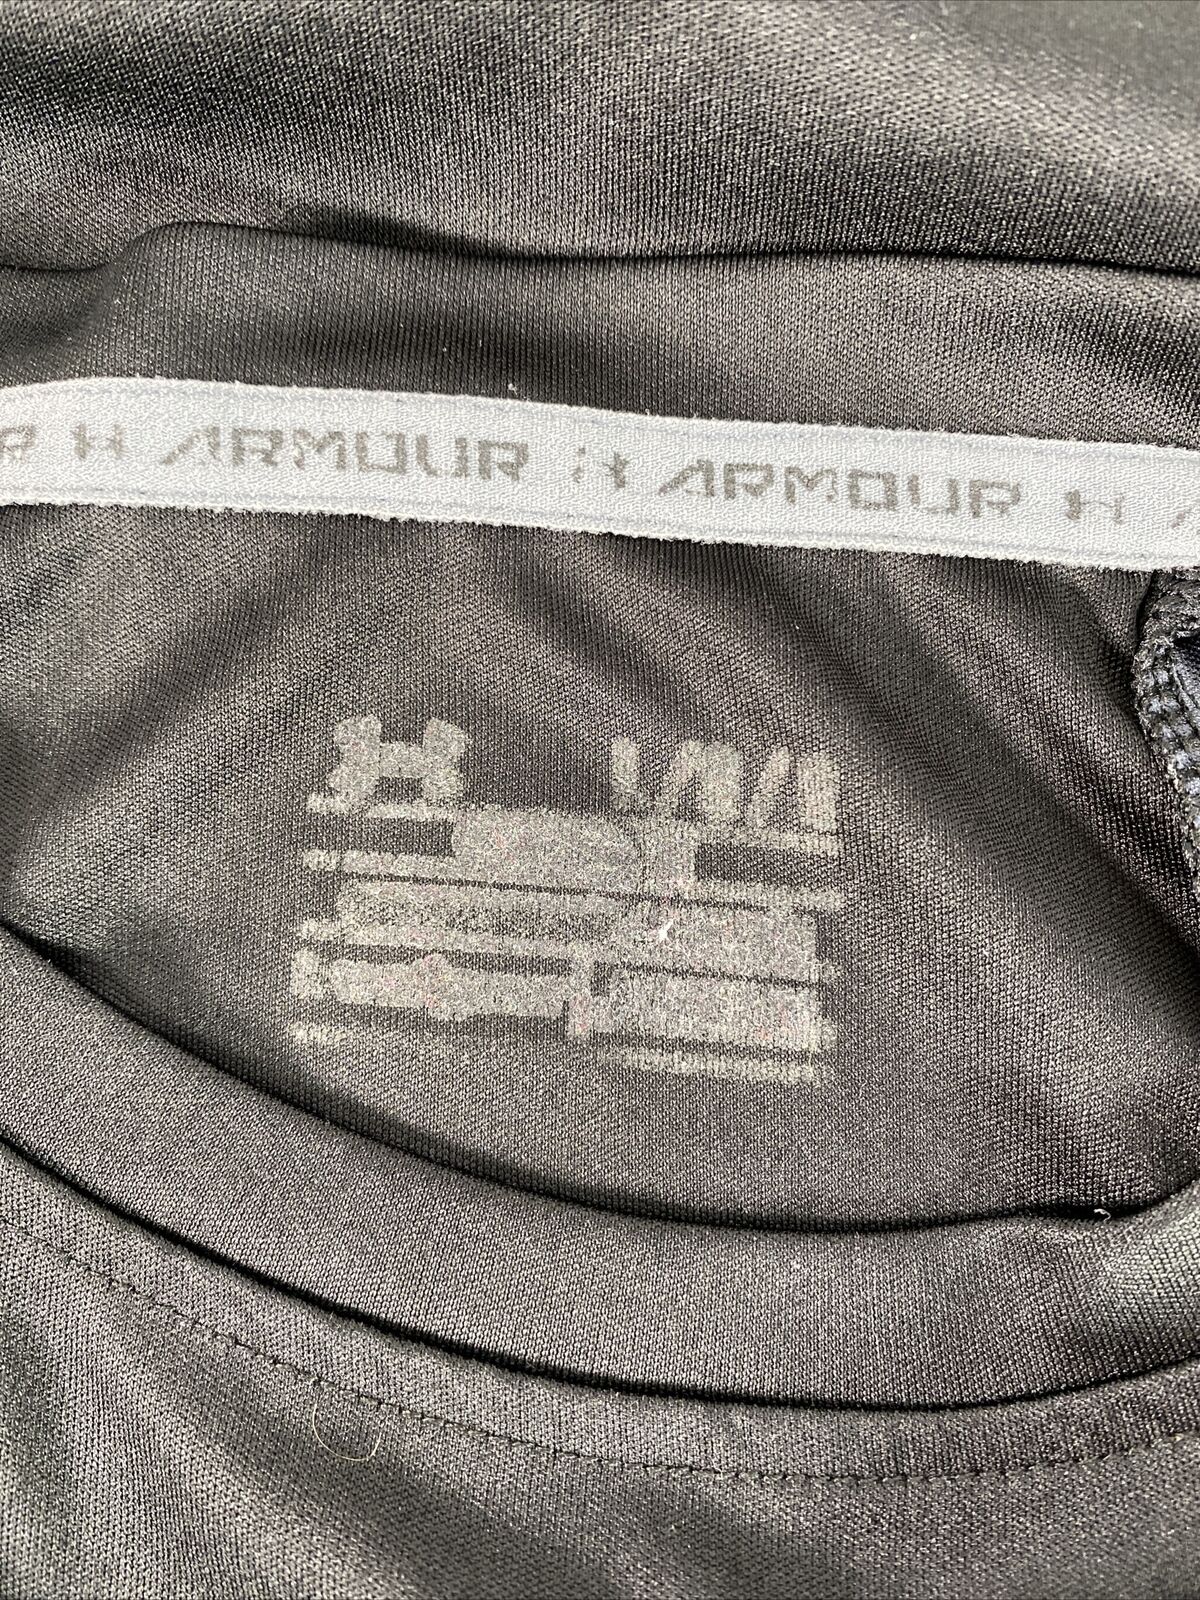 Under Armour Men's Black Short Sleeve Athletic T-Shirt Sz L